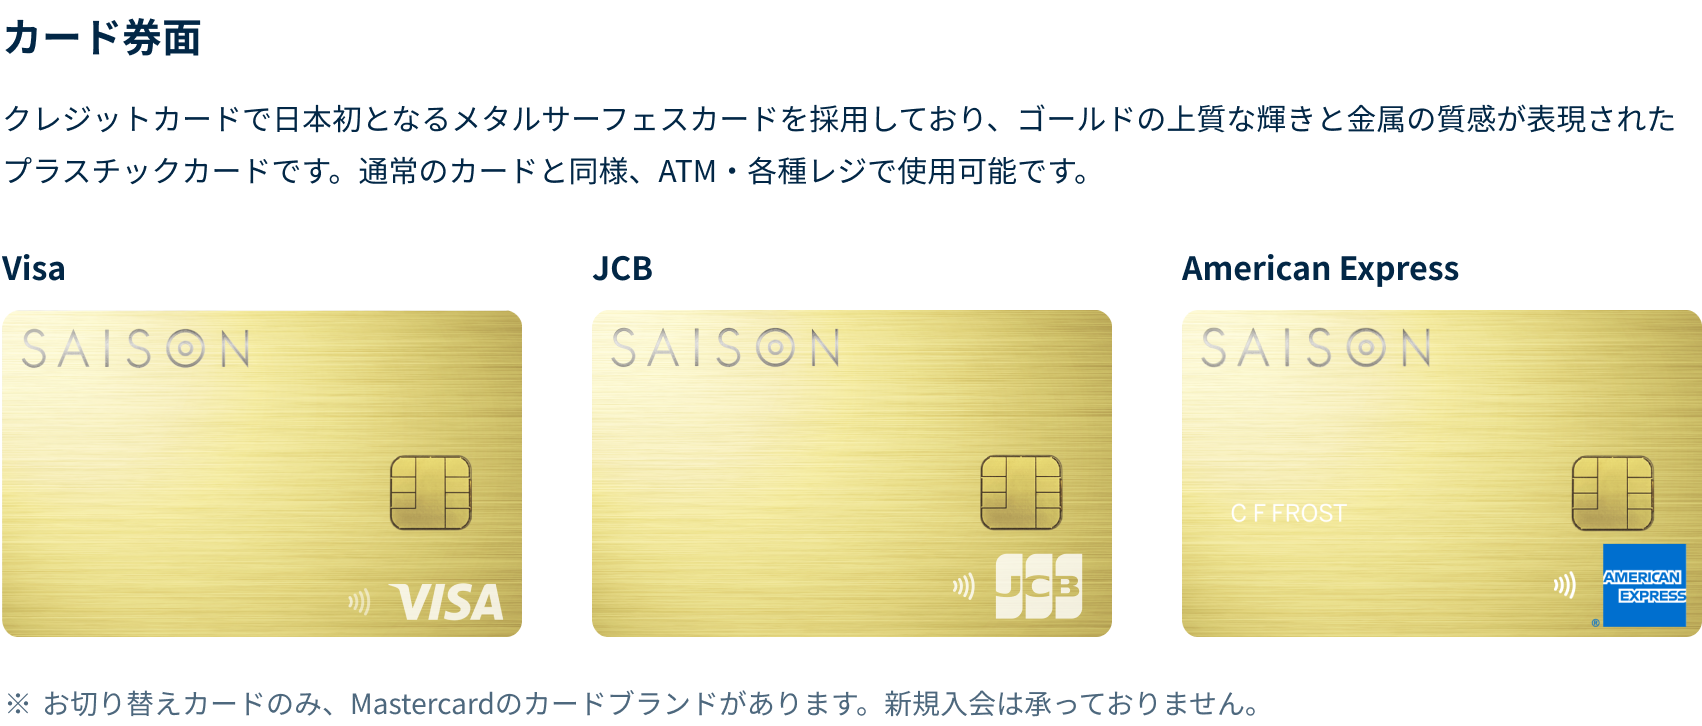 クレジットカードで日本初となるメタルサーフェスカードを採用しており、ゴールドの上質な輝きと金属の質感が表現されたプラスチックカードです。通常のカードと同様、ATM・各種レジで使用可能です。VISA、JCB、American Express券面それぞれに右下にロゴが表示されています。お切り替えカードの場合、Mastercardのカードブランドがございます。